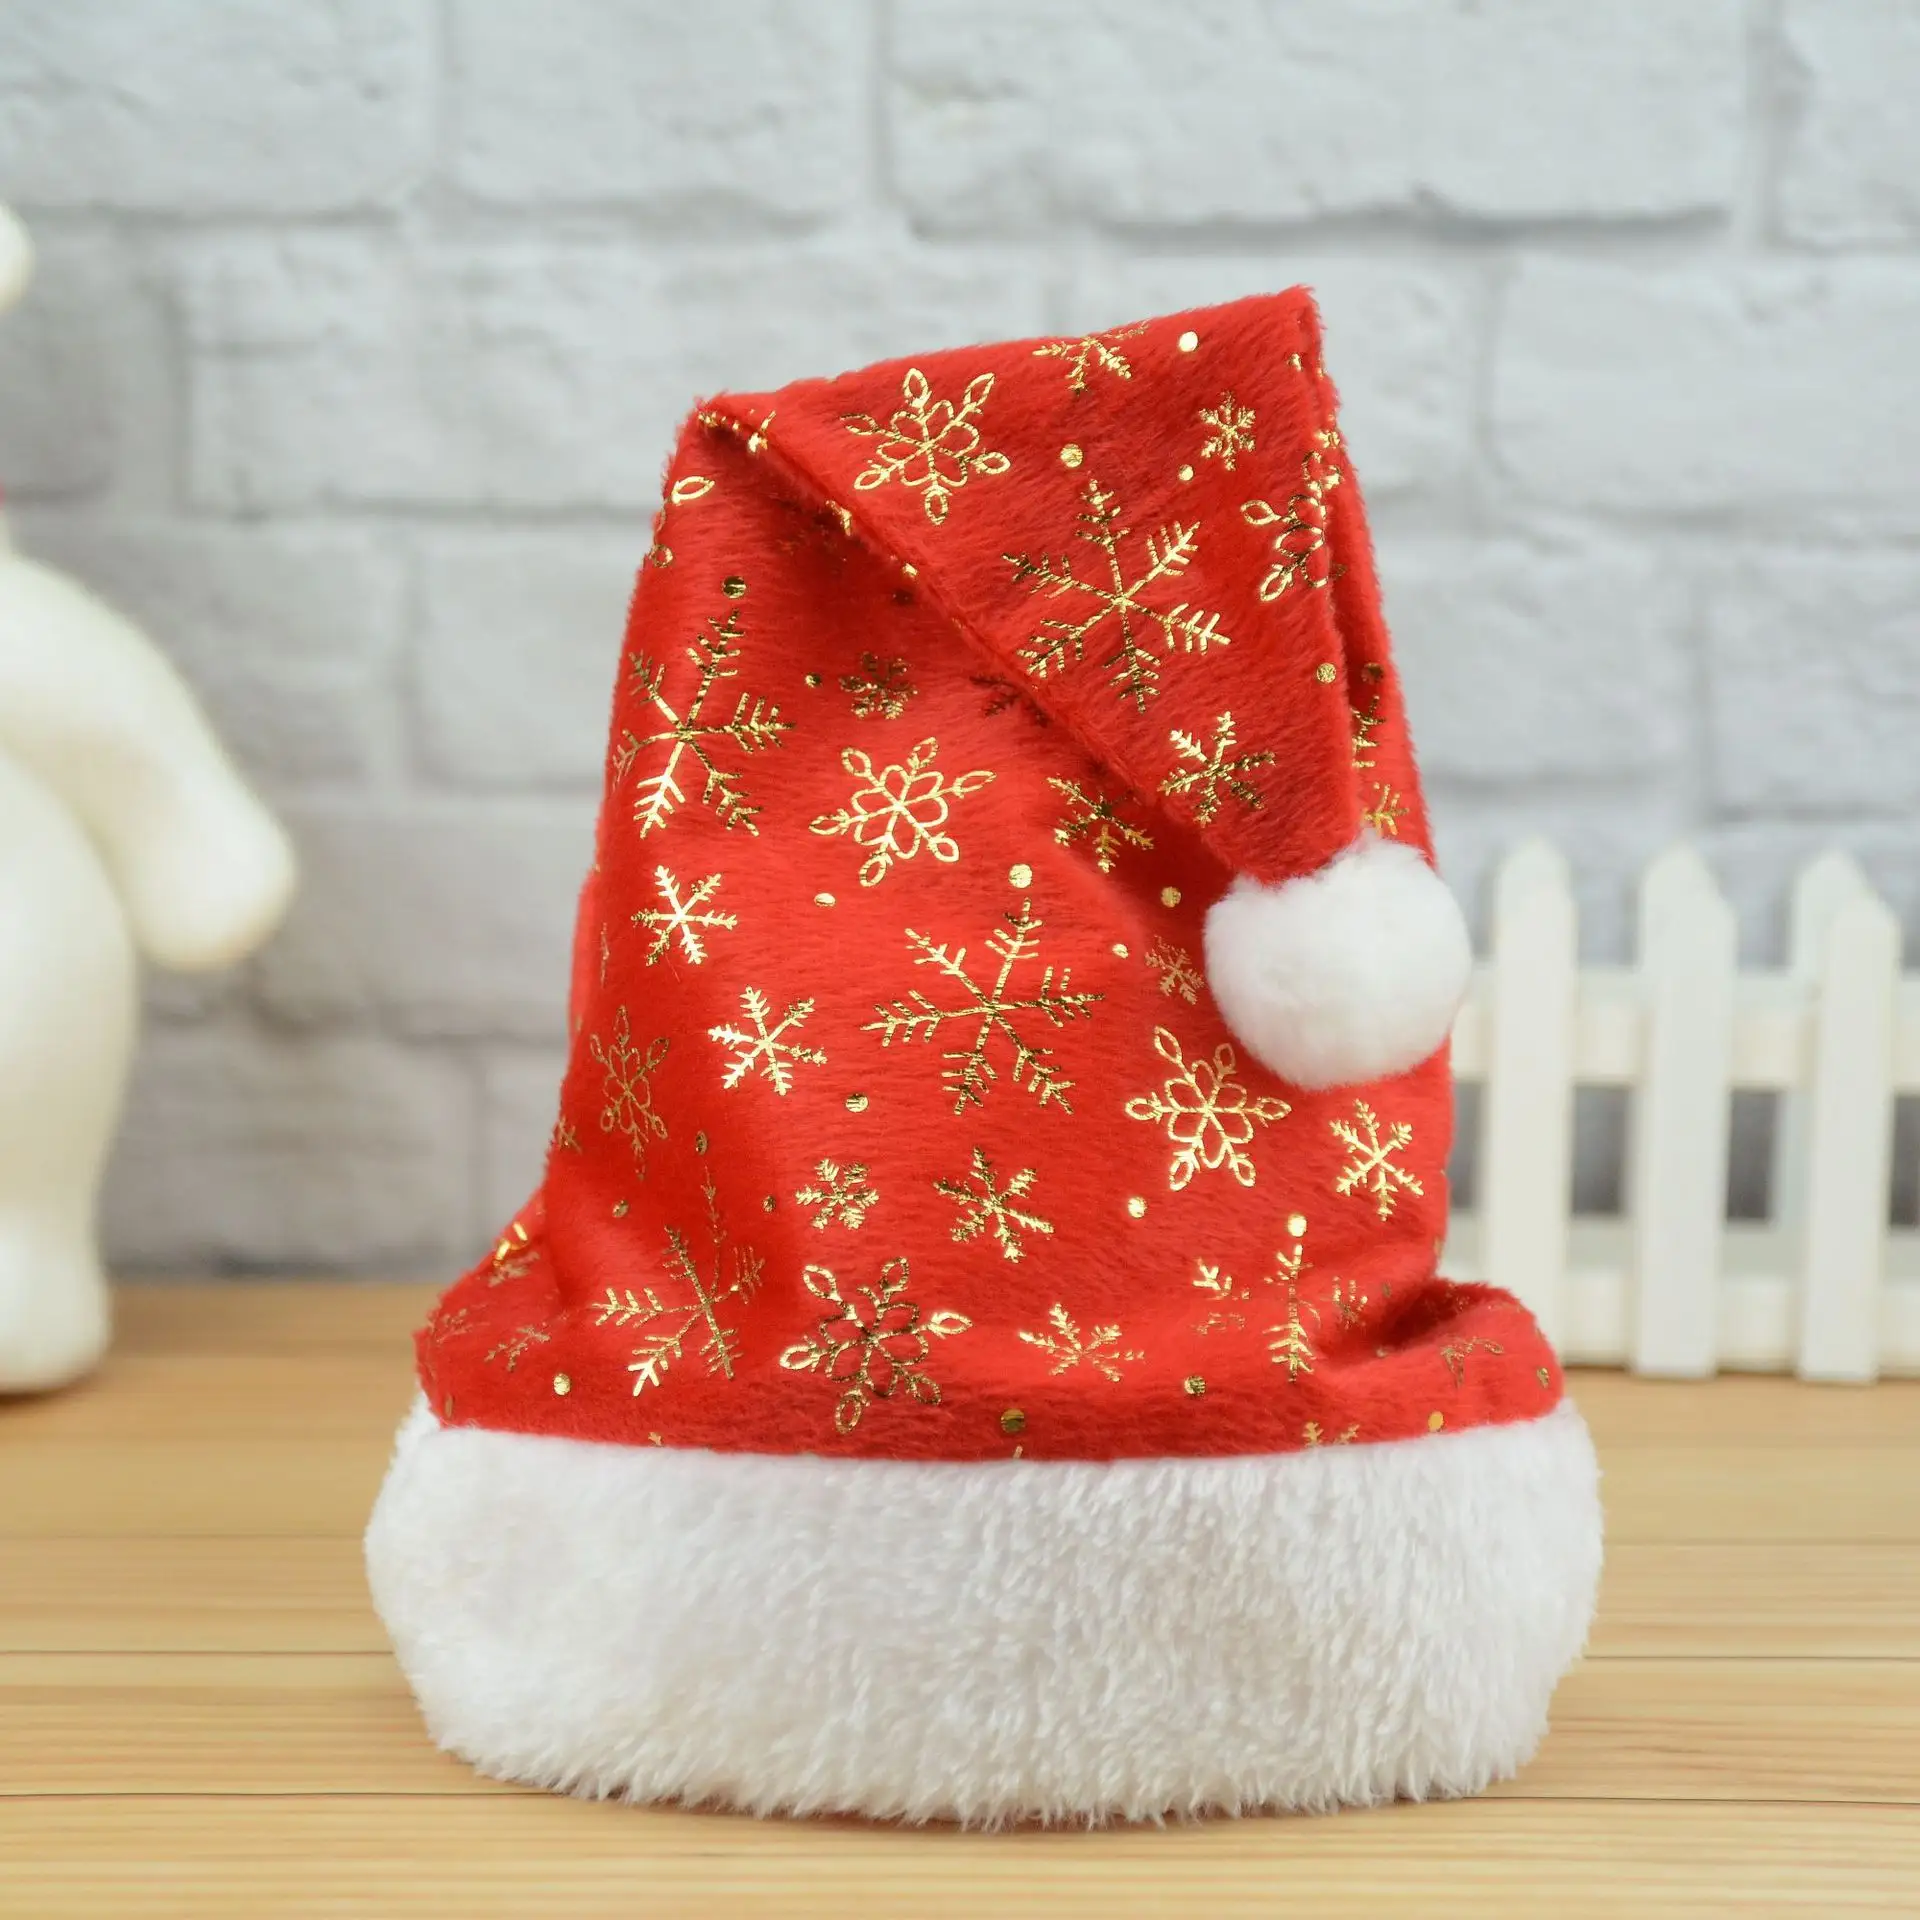 2023 New Arrival Xmas Hat Red Funny Short Plush Hat Snow Gold Stamp Chapéu Do Ornamento Do Natal para Adultos e Crianças